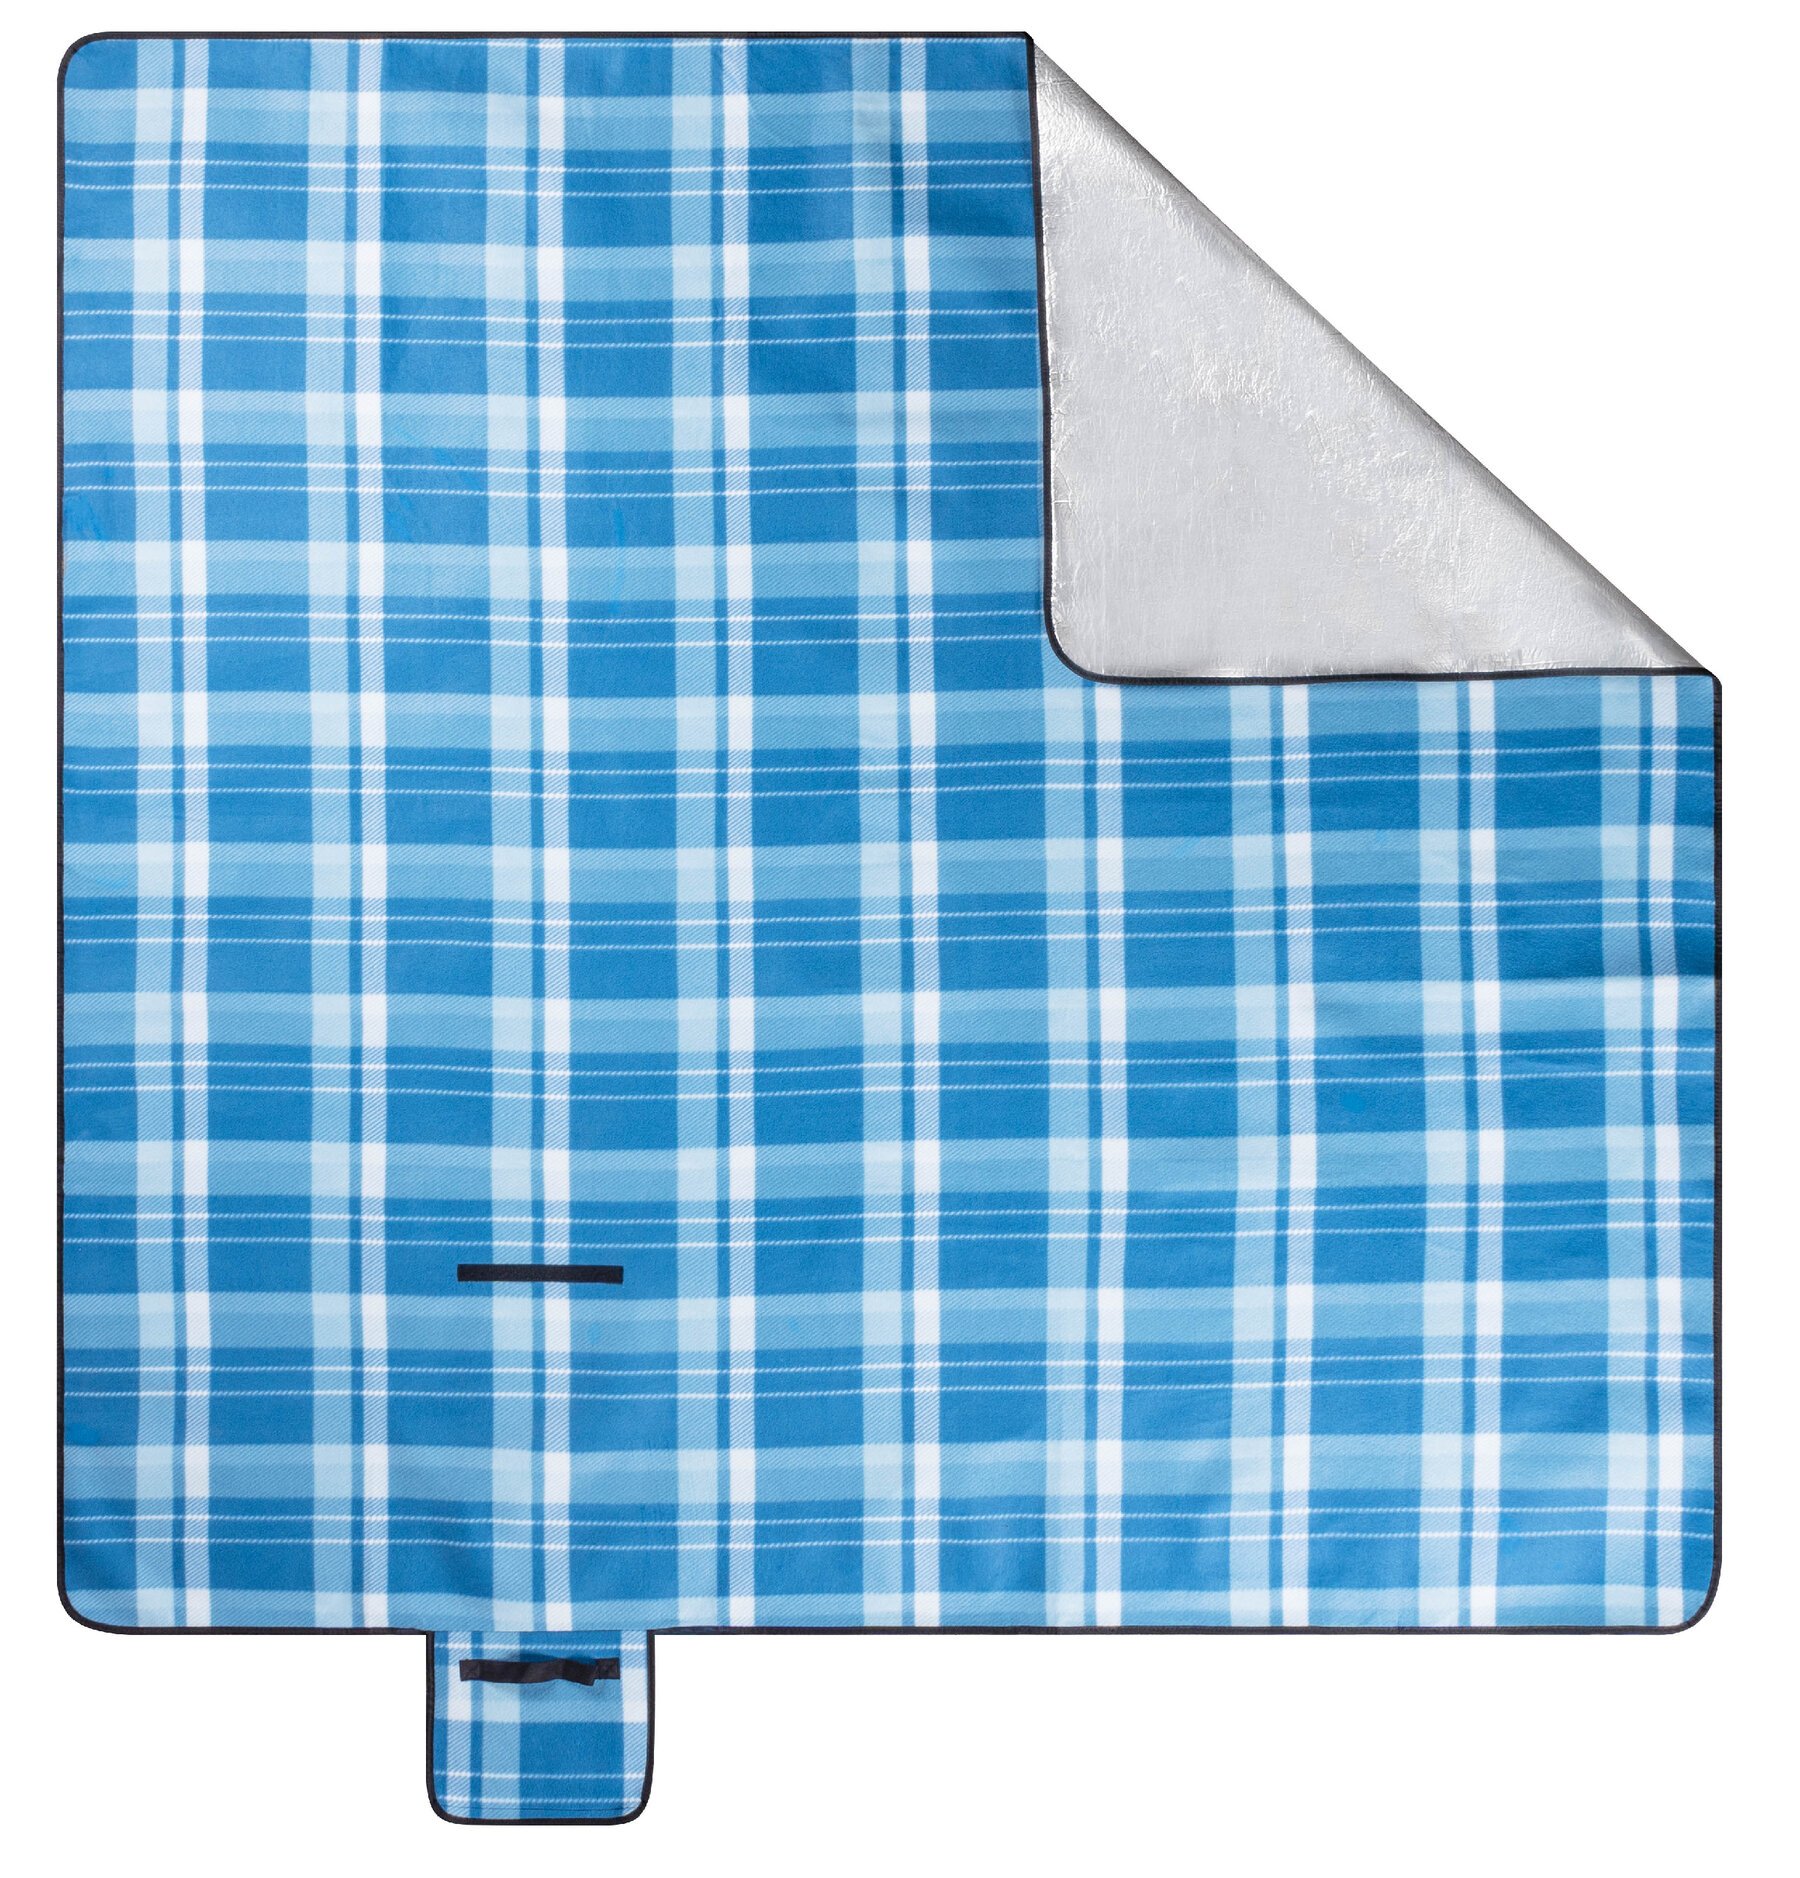 Reisedecke XXL, Campingdecke wärmeisoliert und wasserdicht, Urlaubsdecke mit Tragegriff blau/weiß-karo 200x200 cm